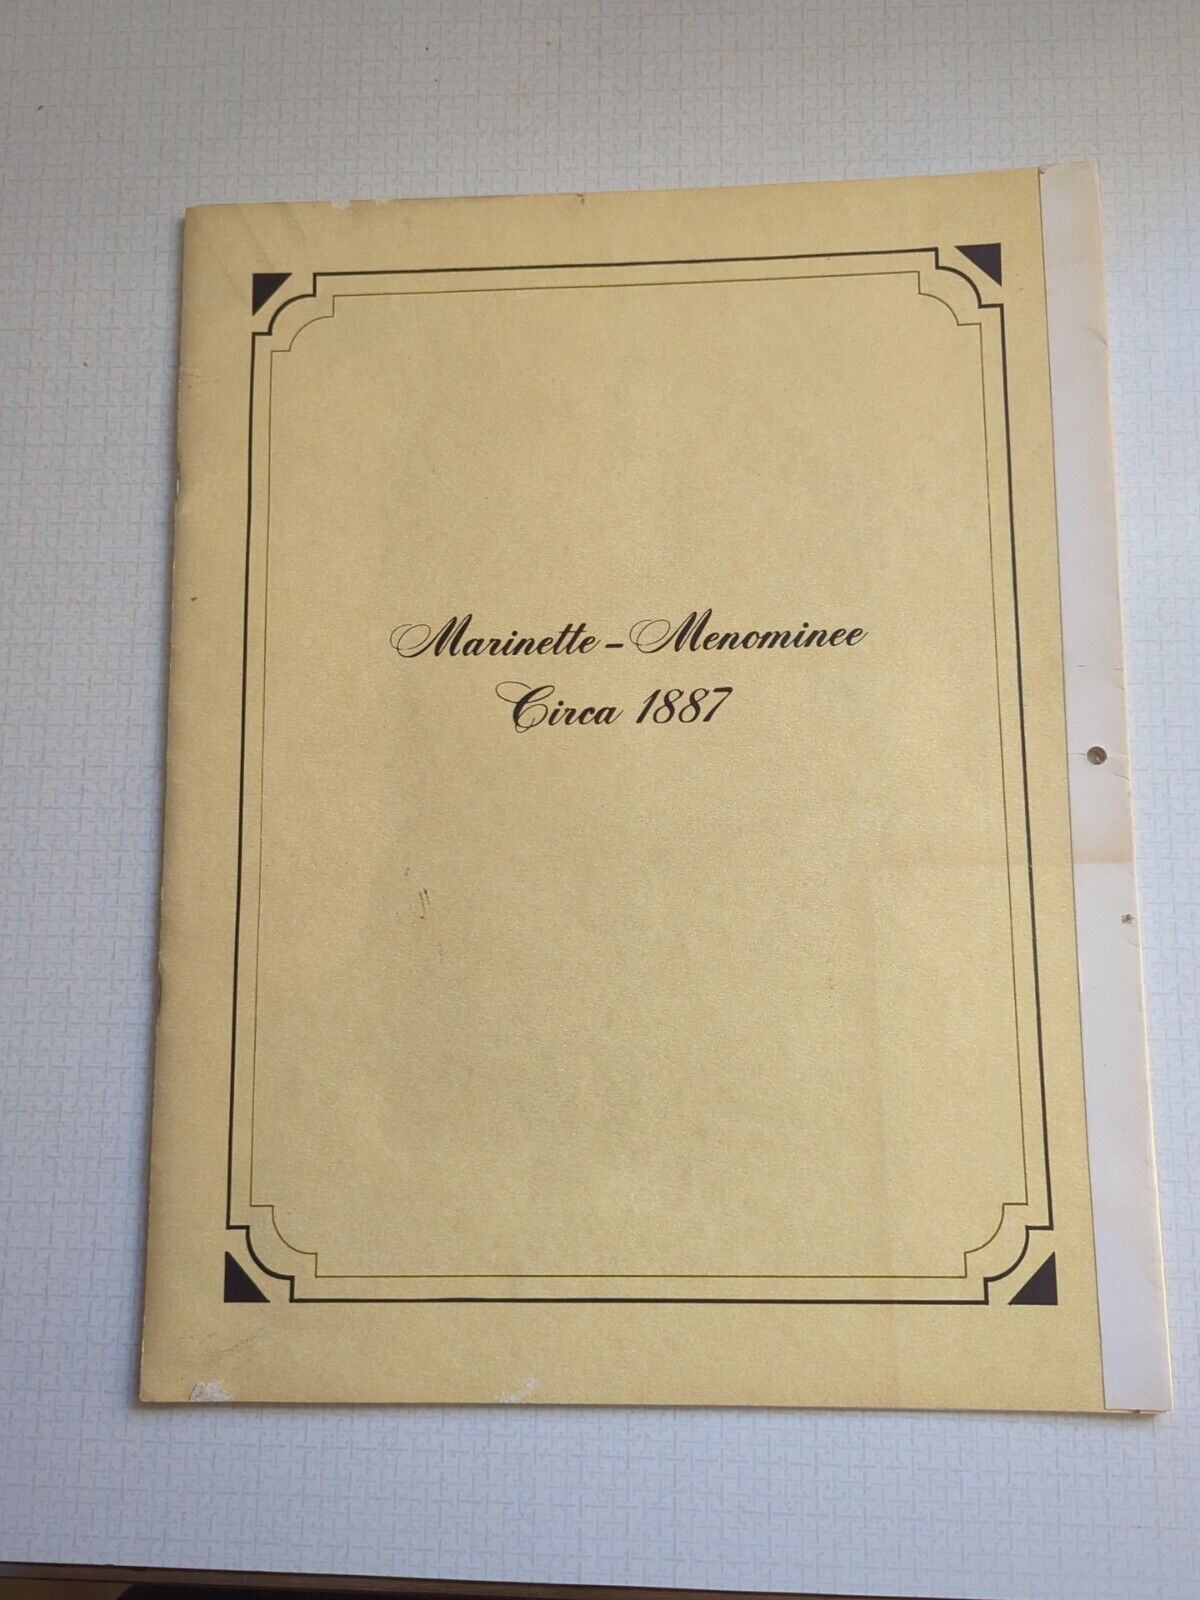 Marinette WI Menominee Mi Circa 1887 - History Of The Area In The Late 1800's